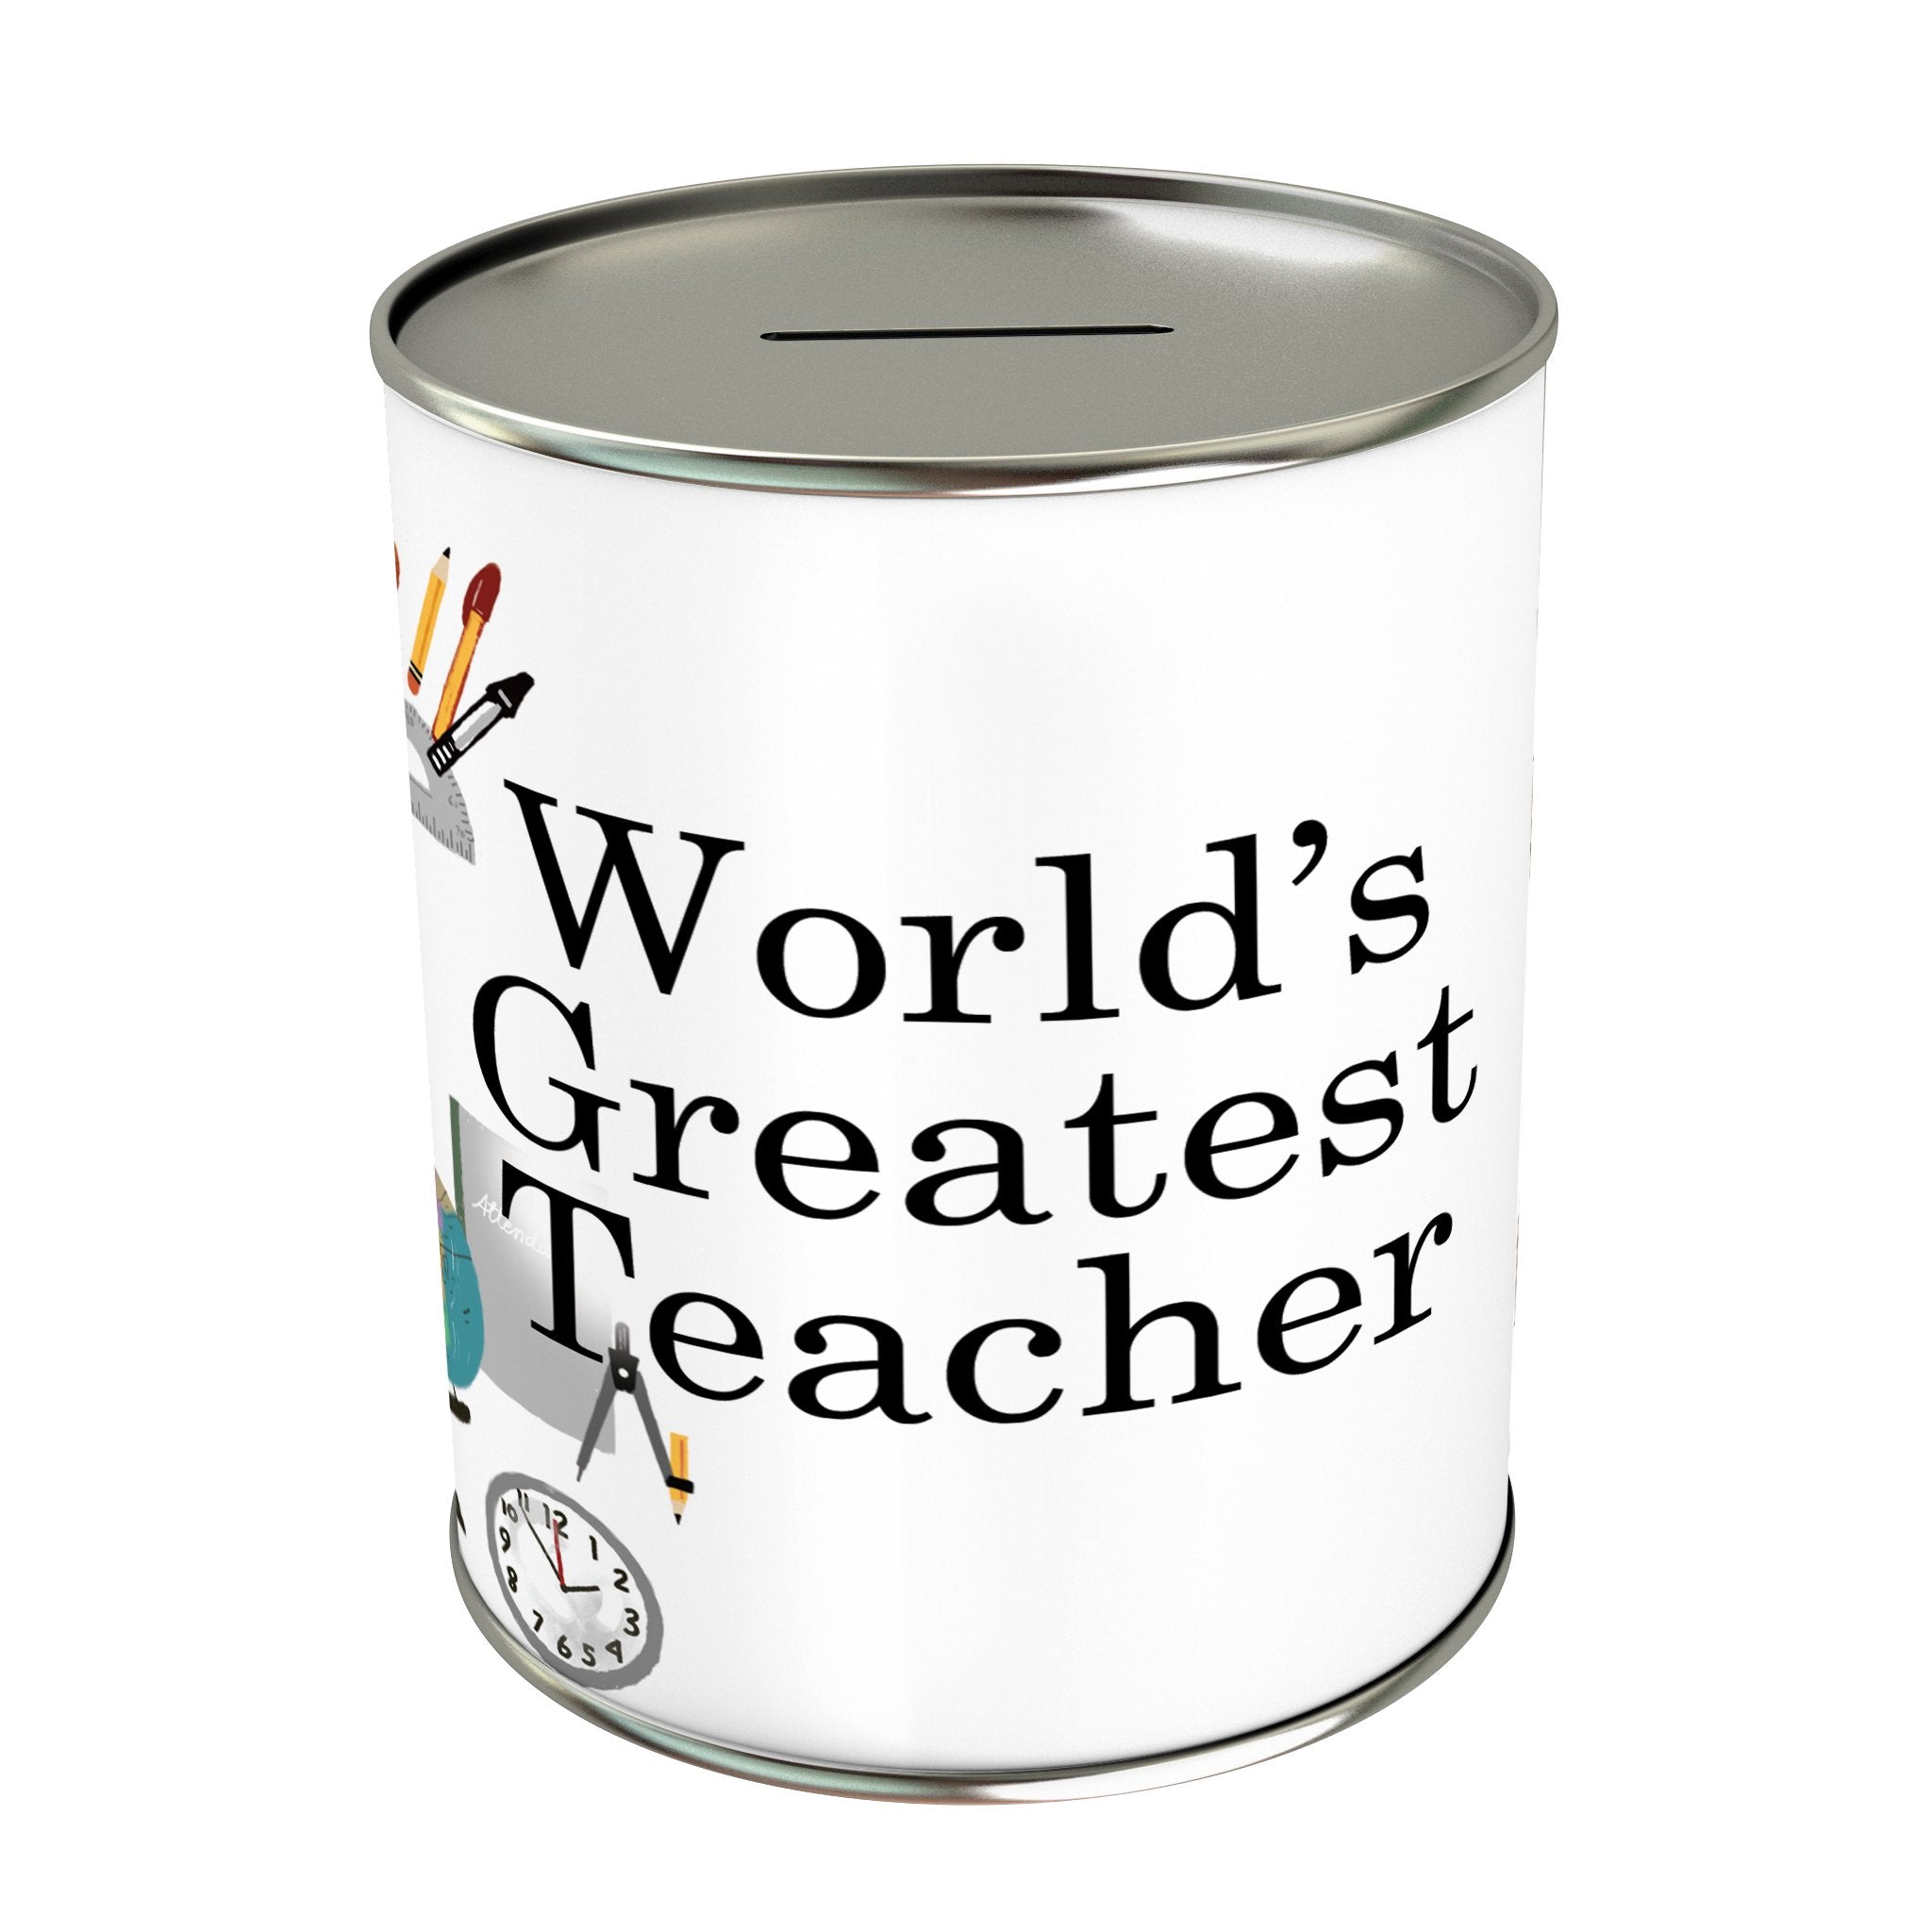 World's Greatest Teacher Coin Bank